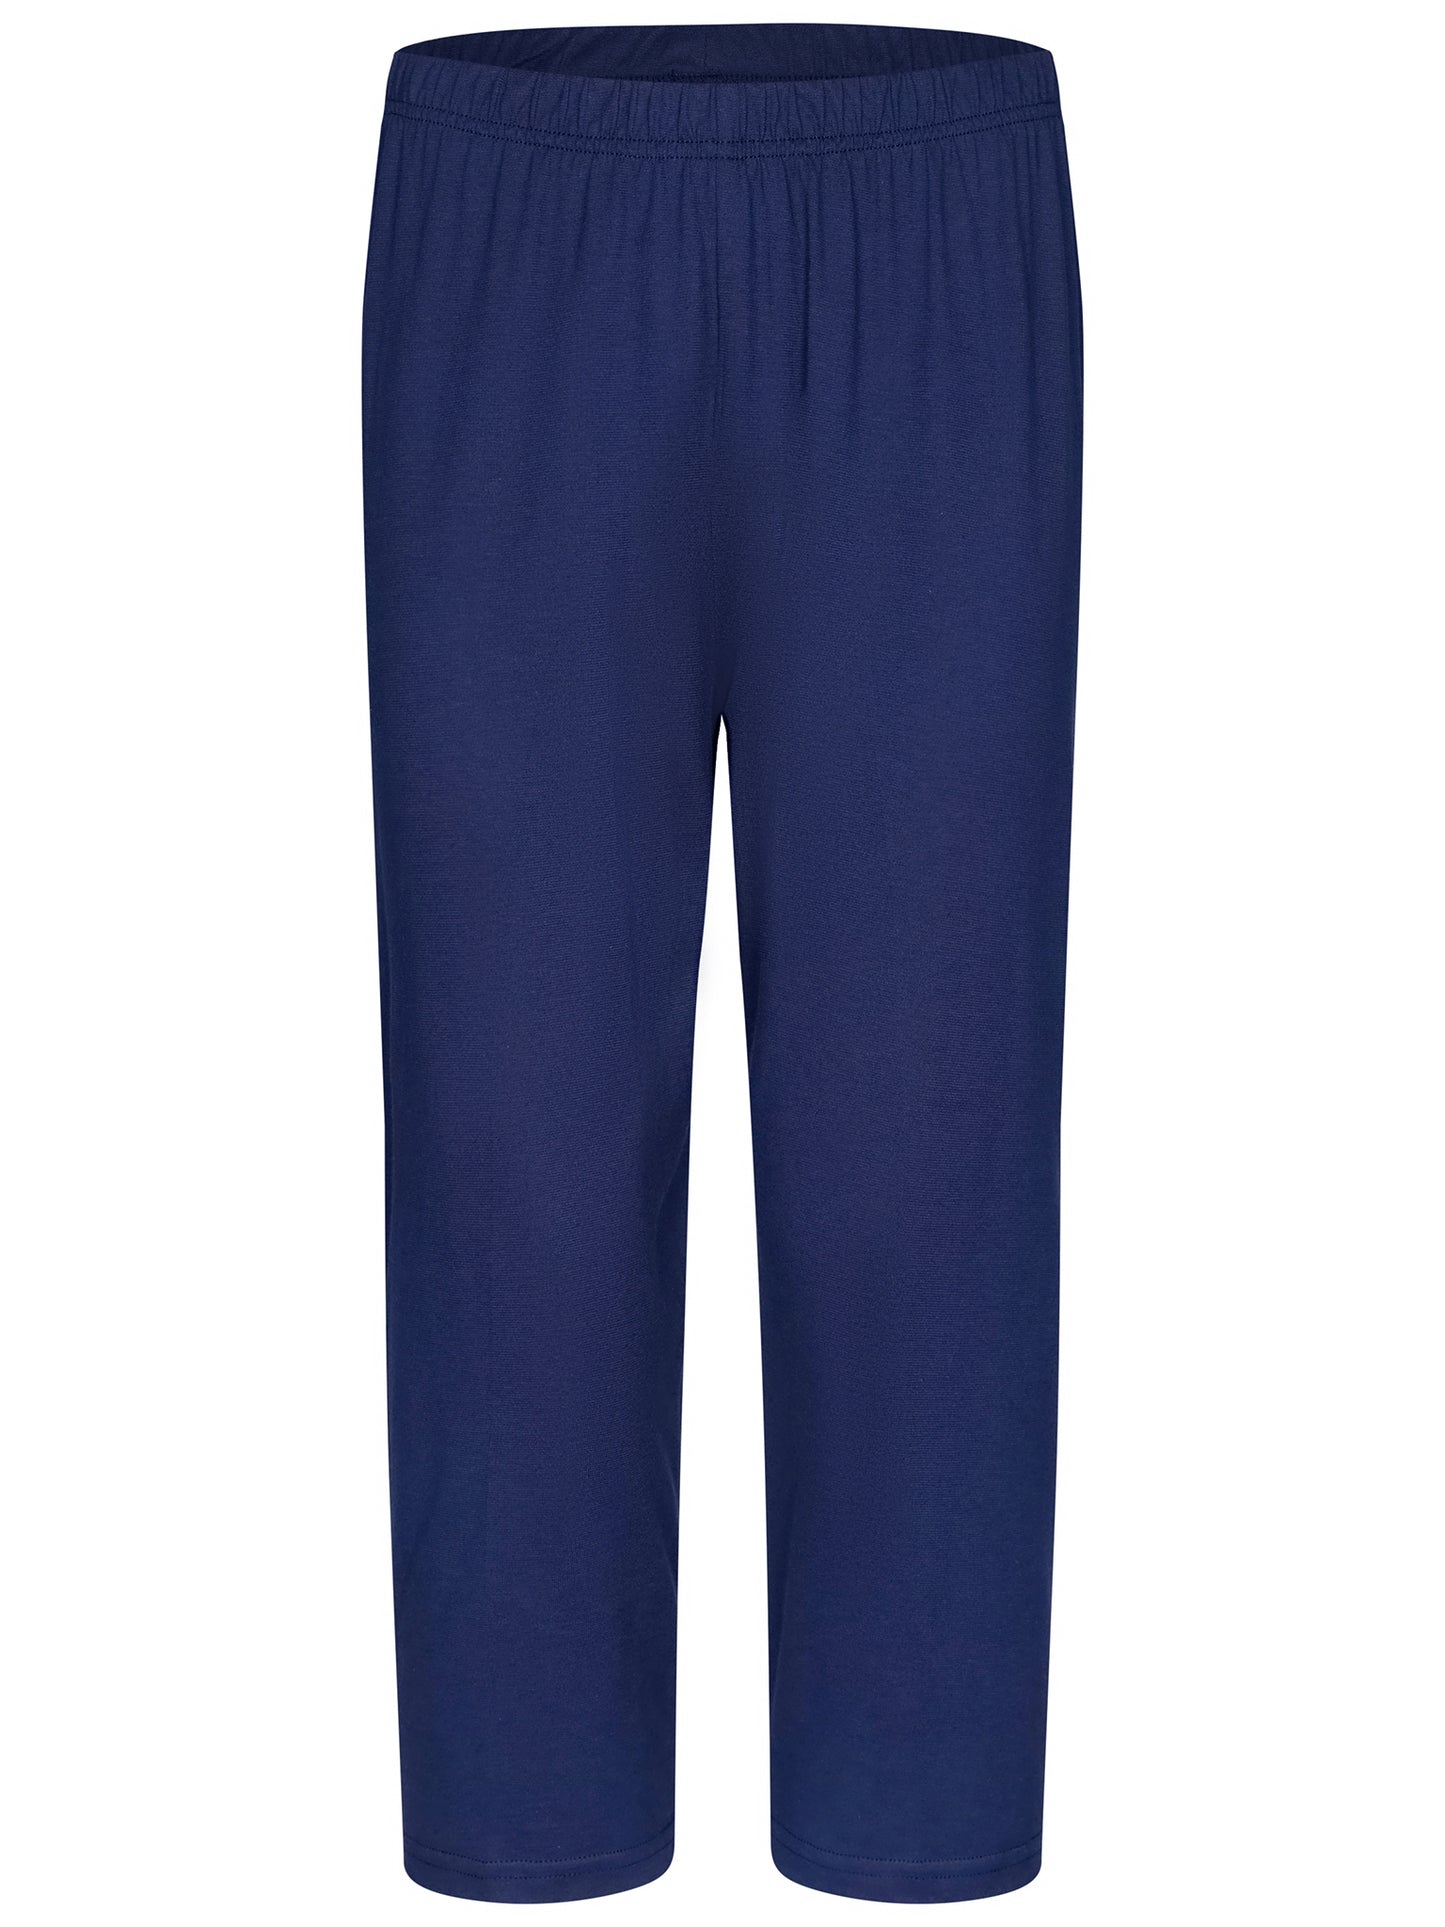 Pastunette pyjama met capribroek ruitmotief - 20241-170-4 - Blauw